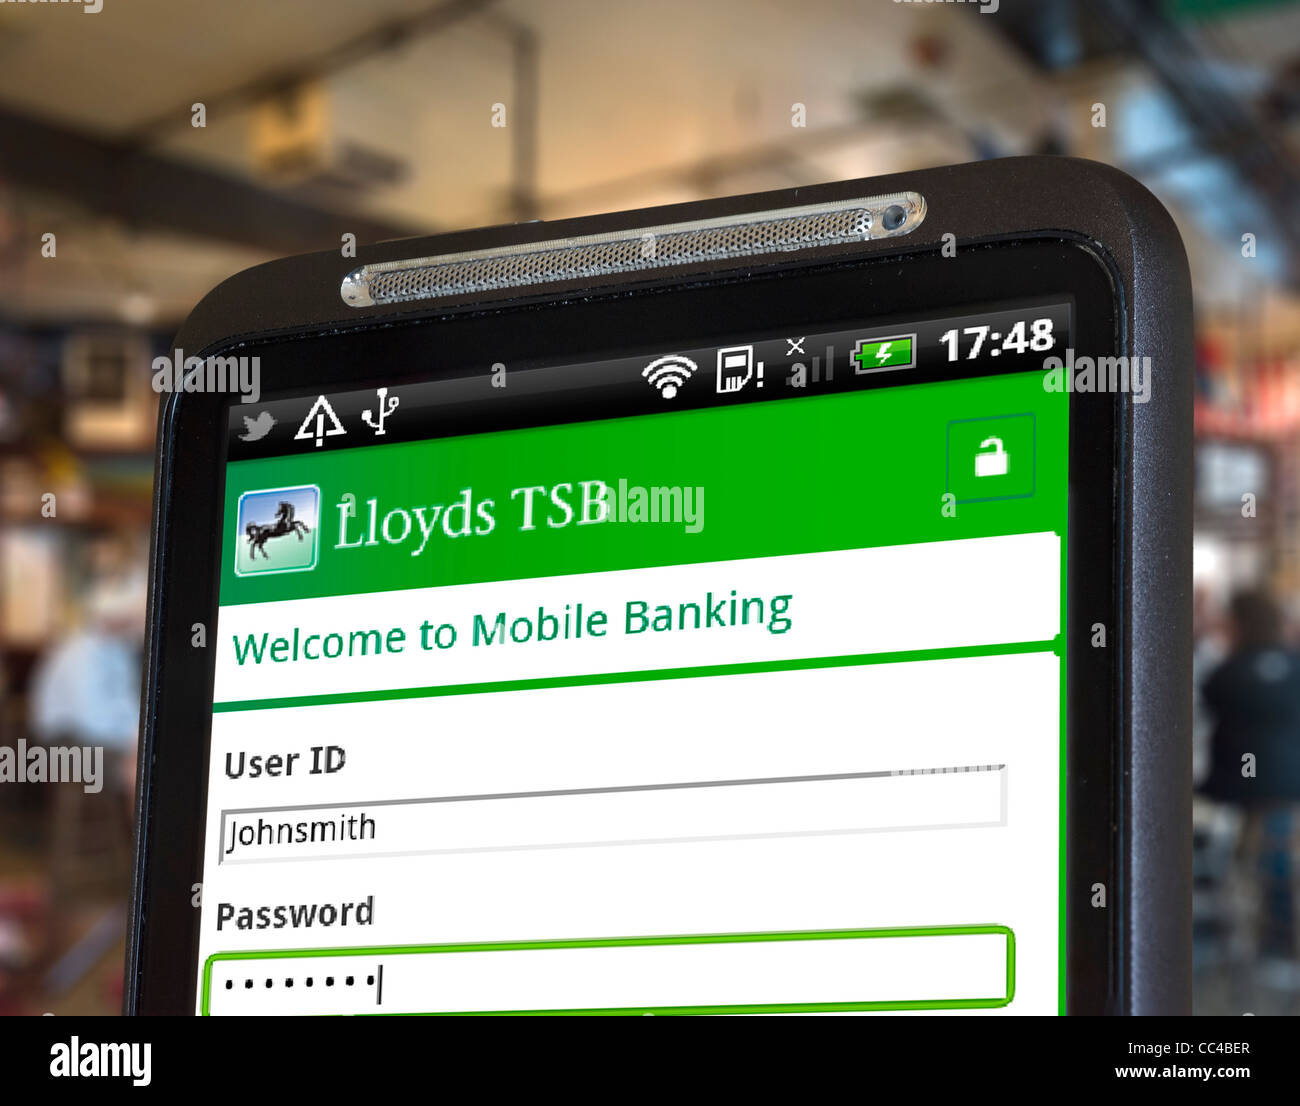 Anmeldung bei mobilen Internet-Banking mit der Lloyds TSB-app auf einem HTC-smartphone Stockfoto